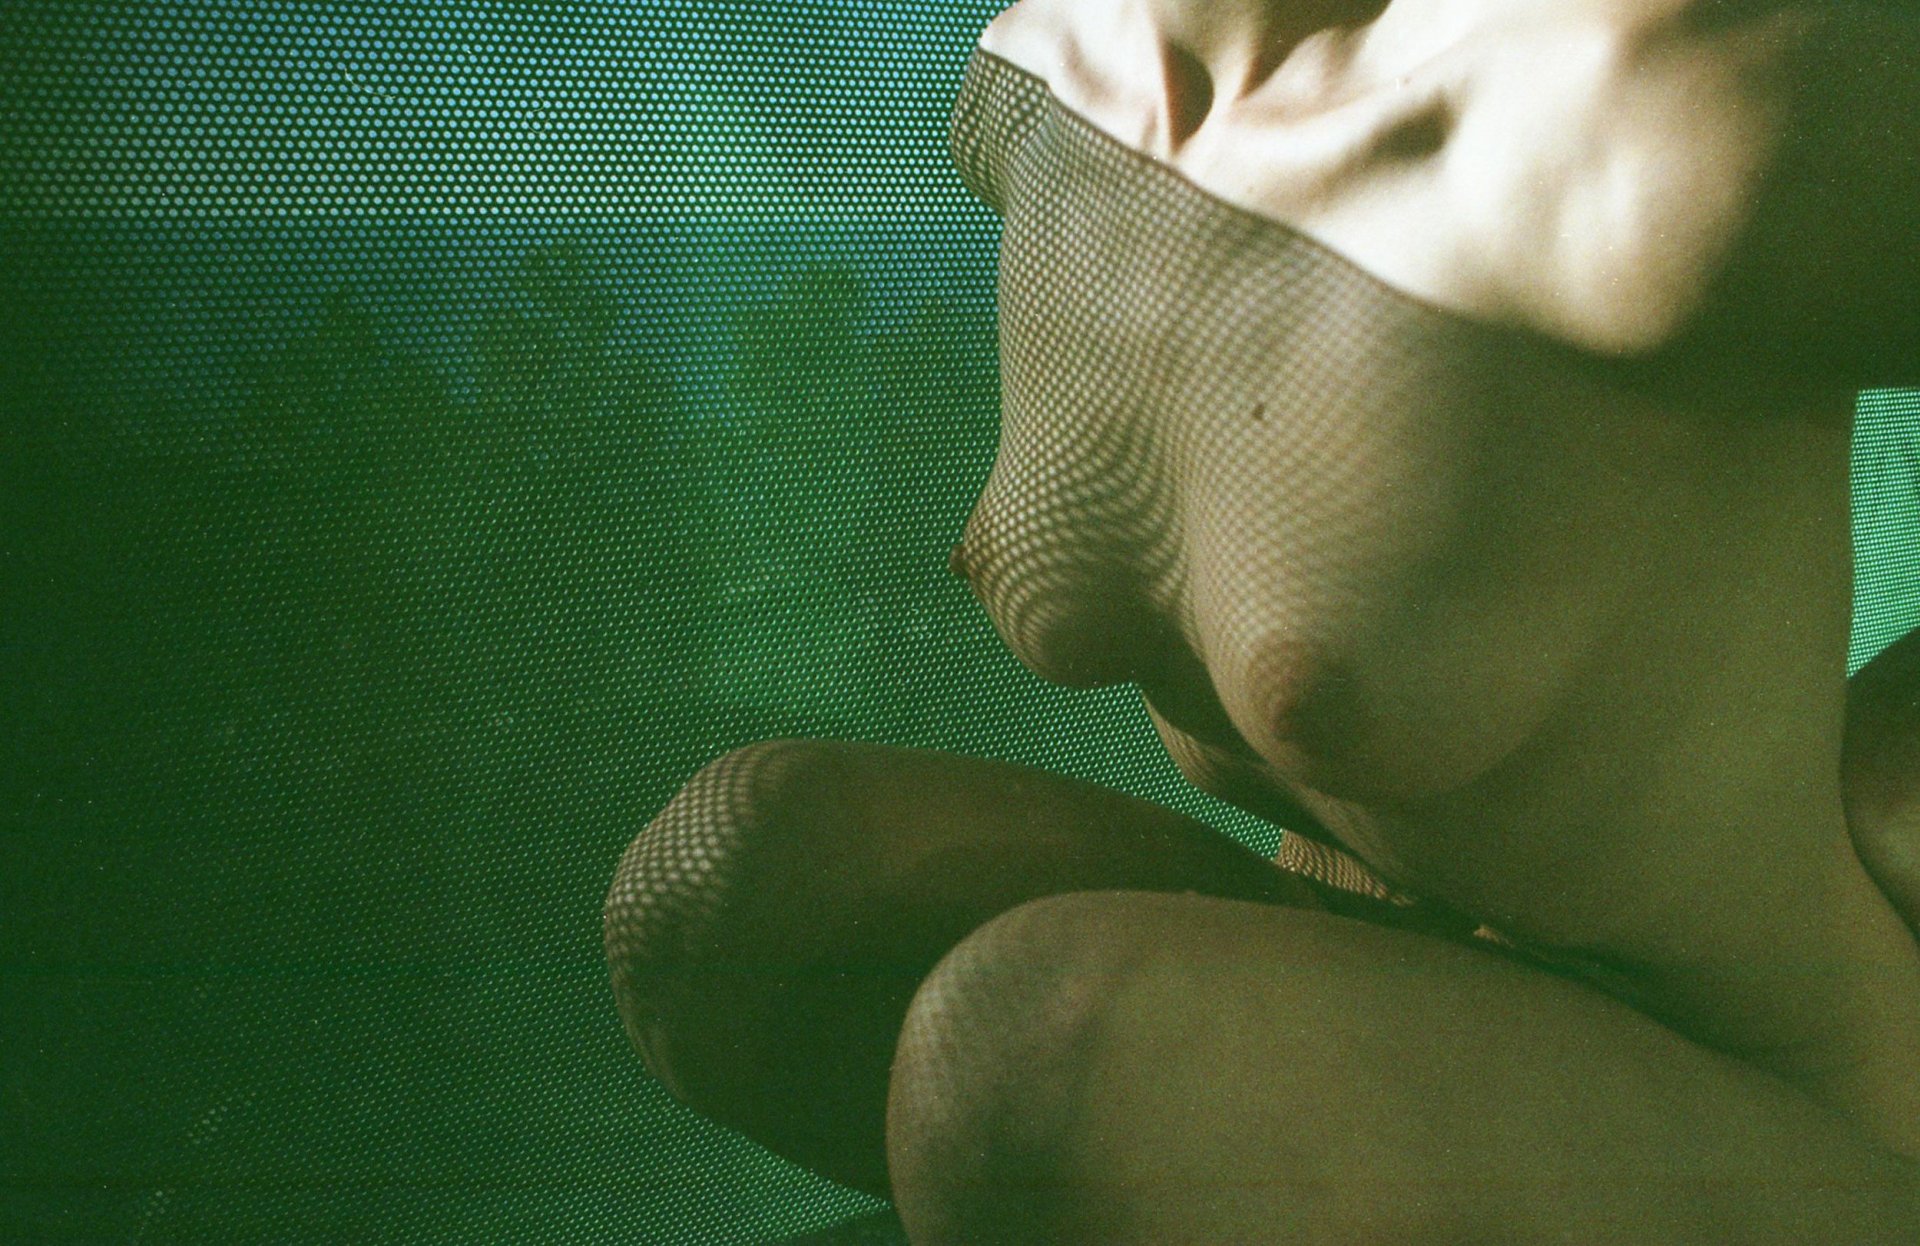 Olivia North Nude & Sexy (21 Photos)